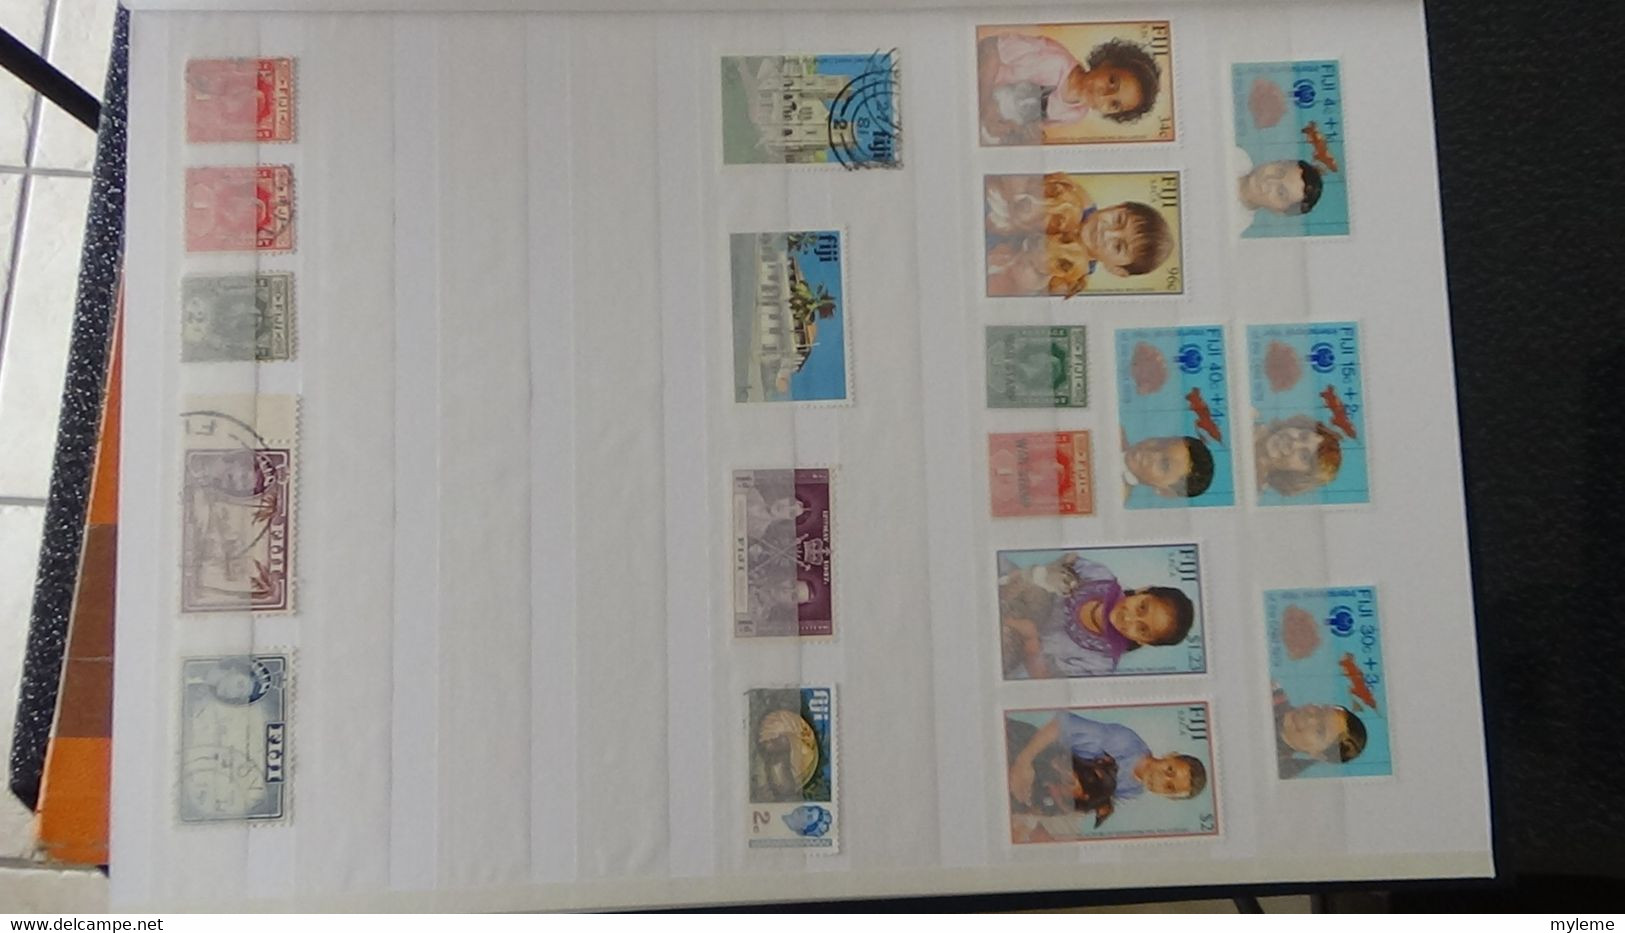 AC386 Collection de timbres majorité oblitérés de différents pays dont France carnet O Rolland ** sans agrafe centrale